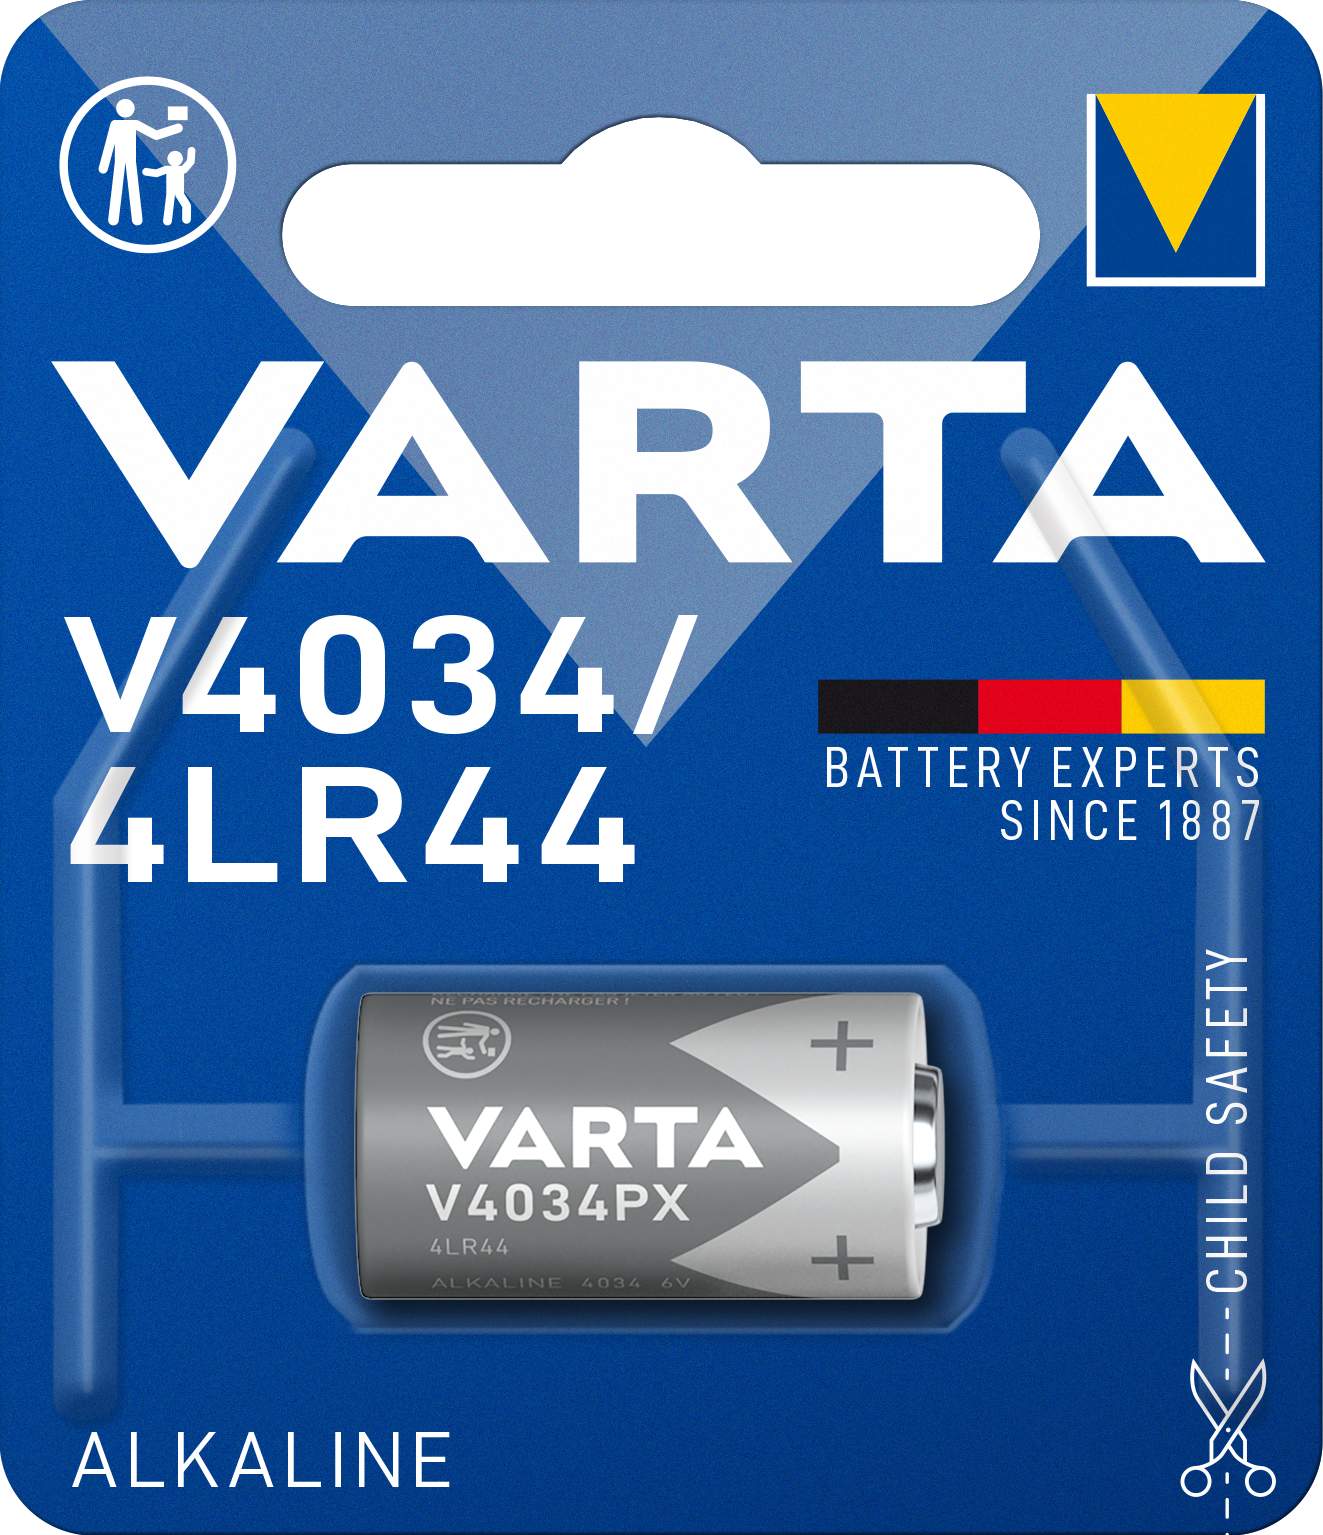 VARTA SPE 4LR44 / V4034PX PAR 1